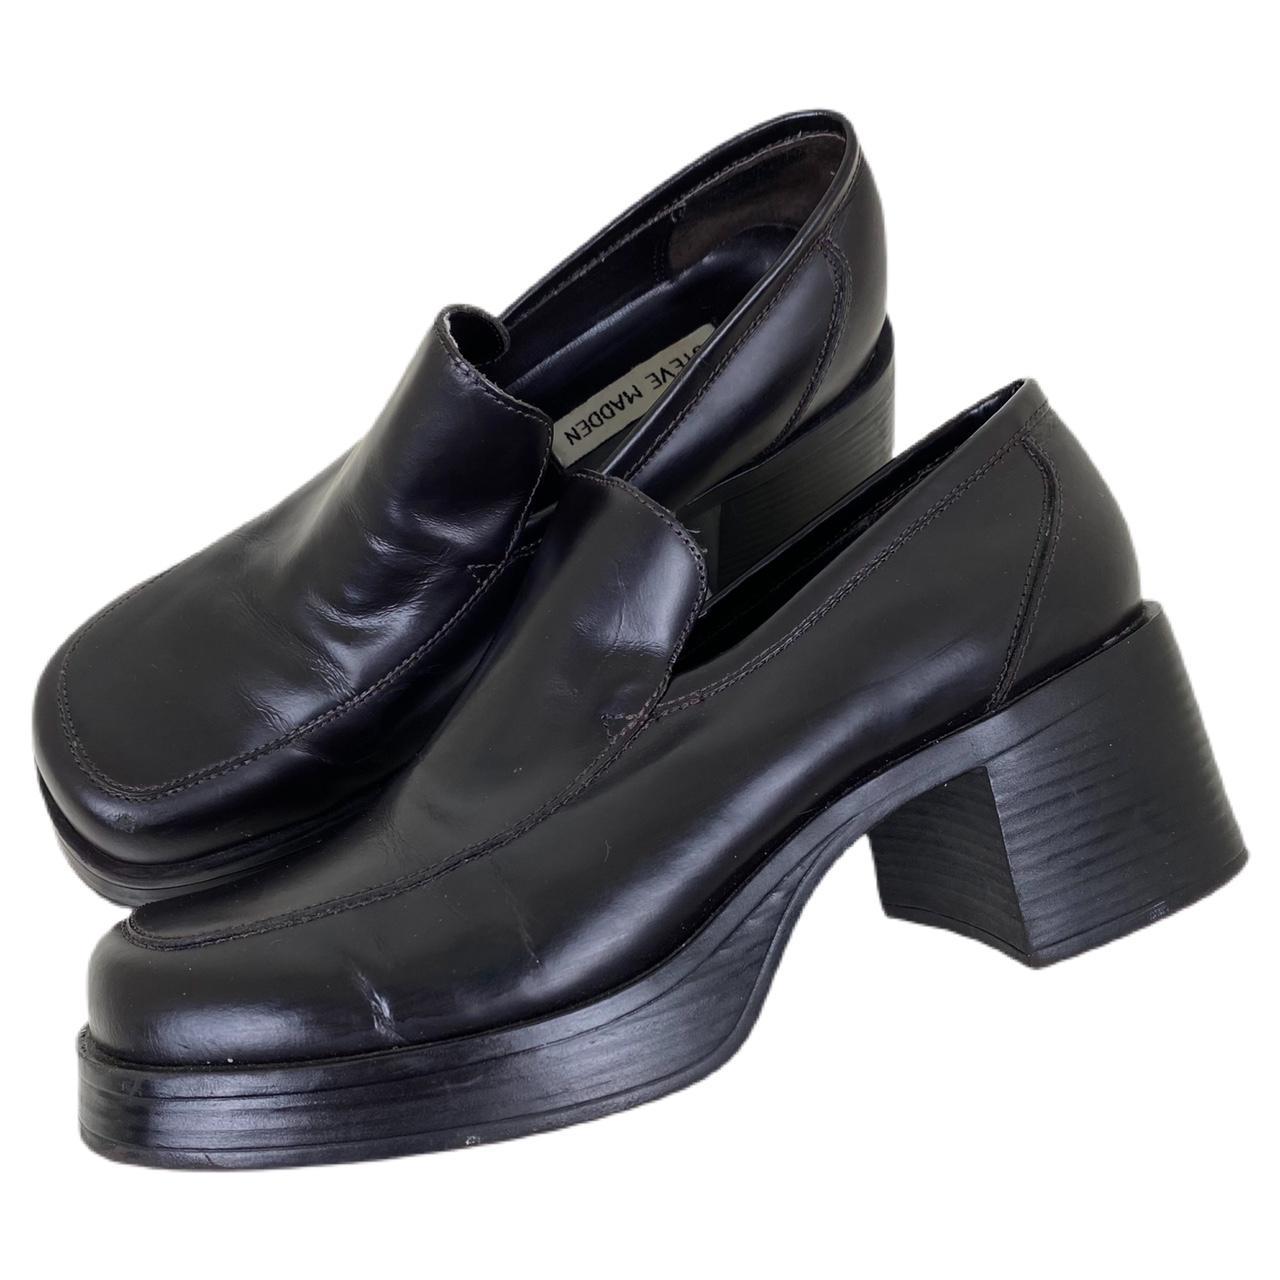 Vintage 90s STEVE MADDEN Black Leather Platform... - Depop